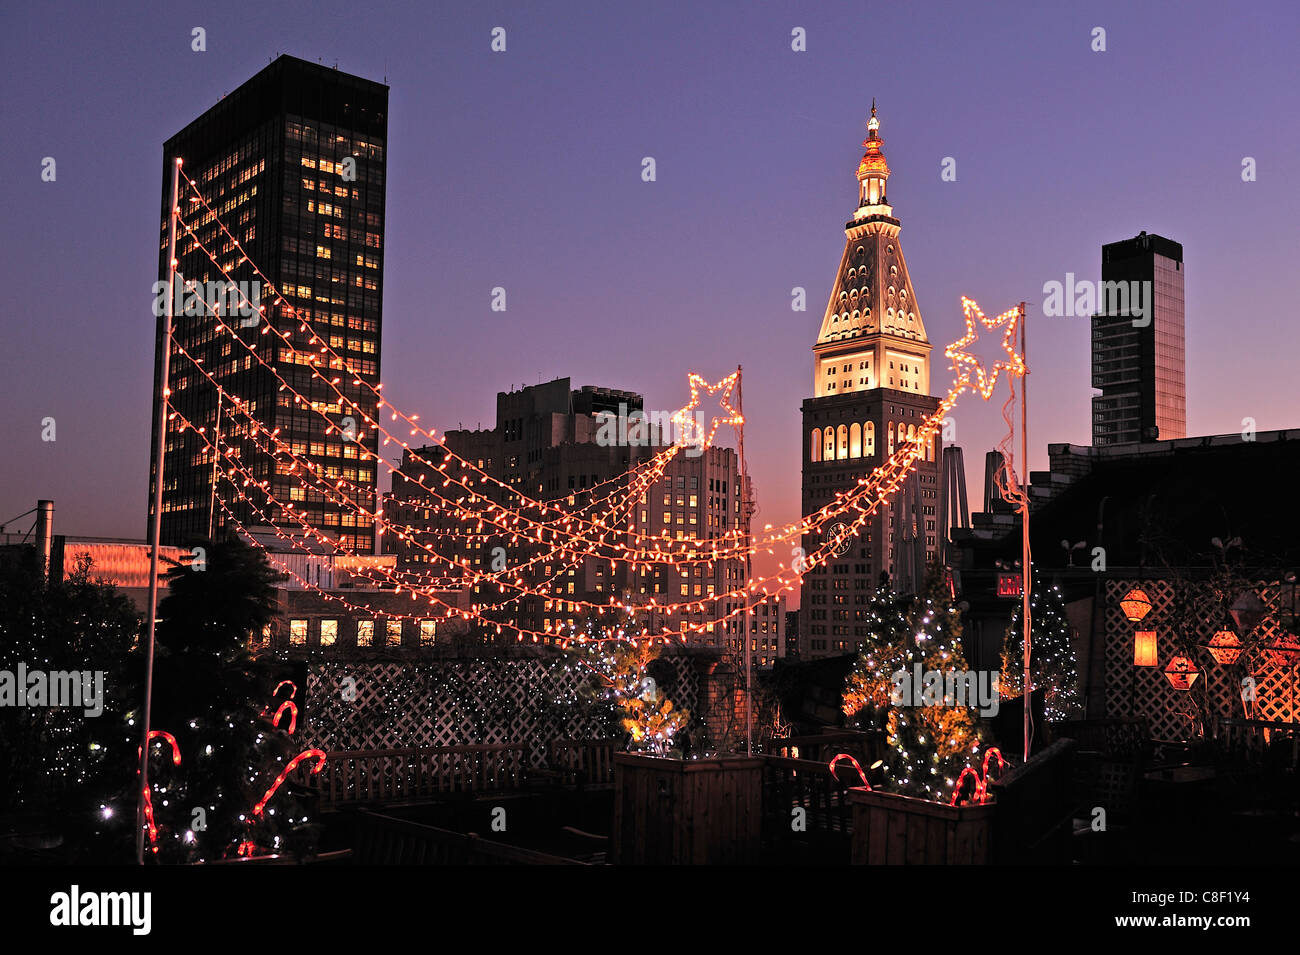 Metropolitan, l'assurance-vie, la société, se sont réunis, de la construction, Manhattan, New York, USA, United States, Amérique, nuit, Noël Banque D'Images